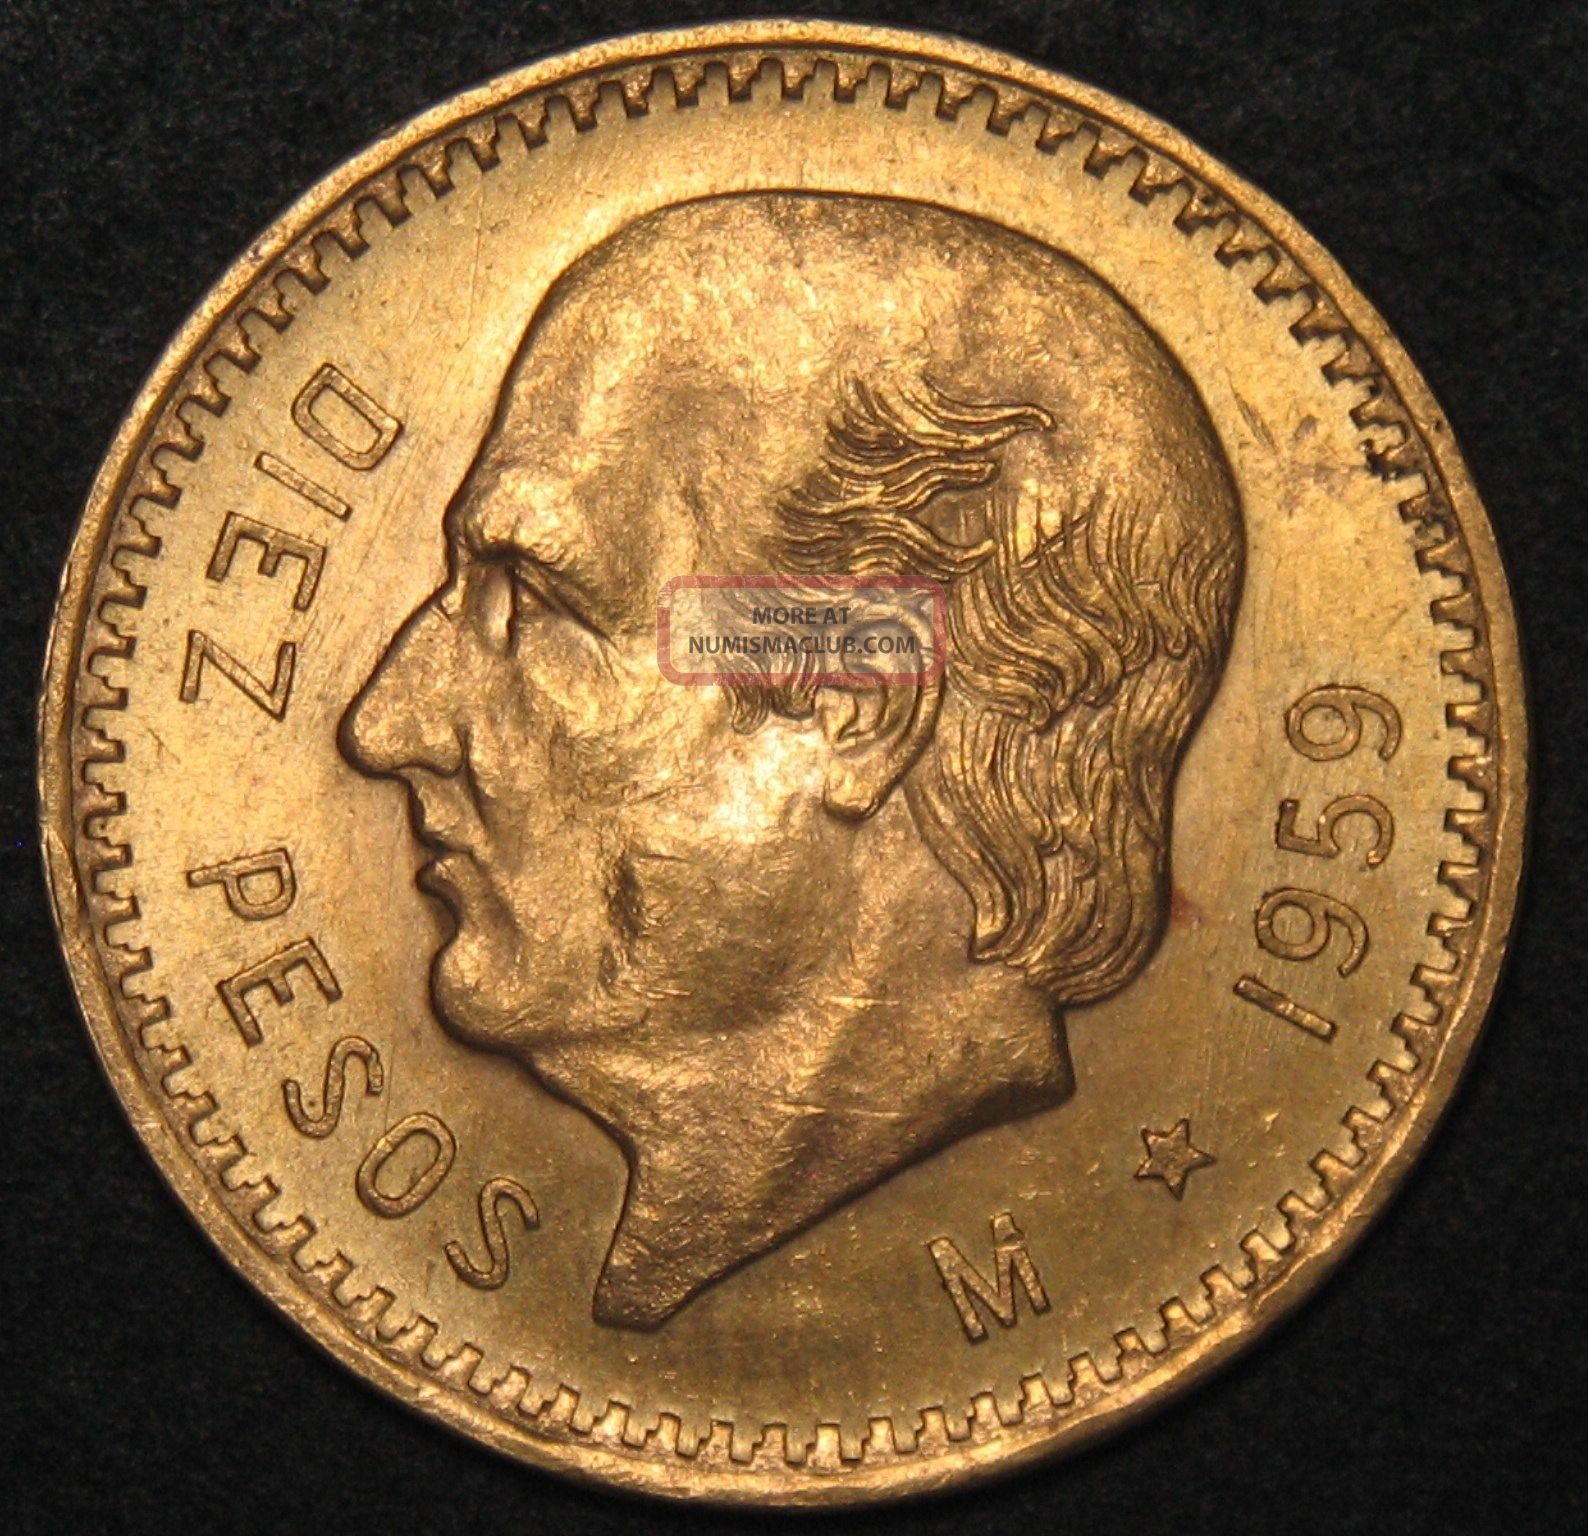 1959 M Mexico 10 Diez Peso Gold Coin 90 (. 2411 Agw) Sku 399628